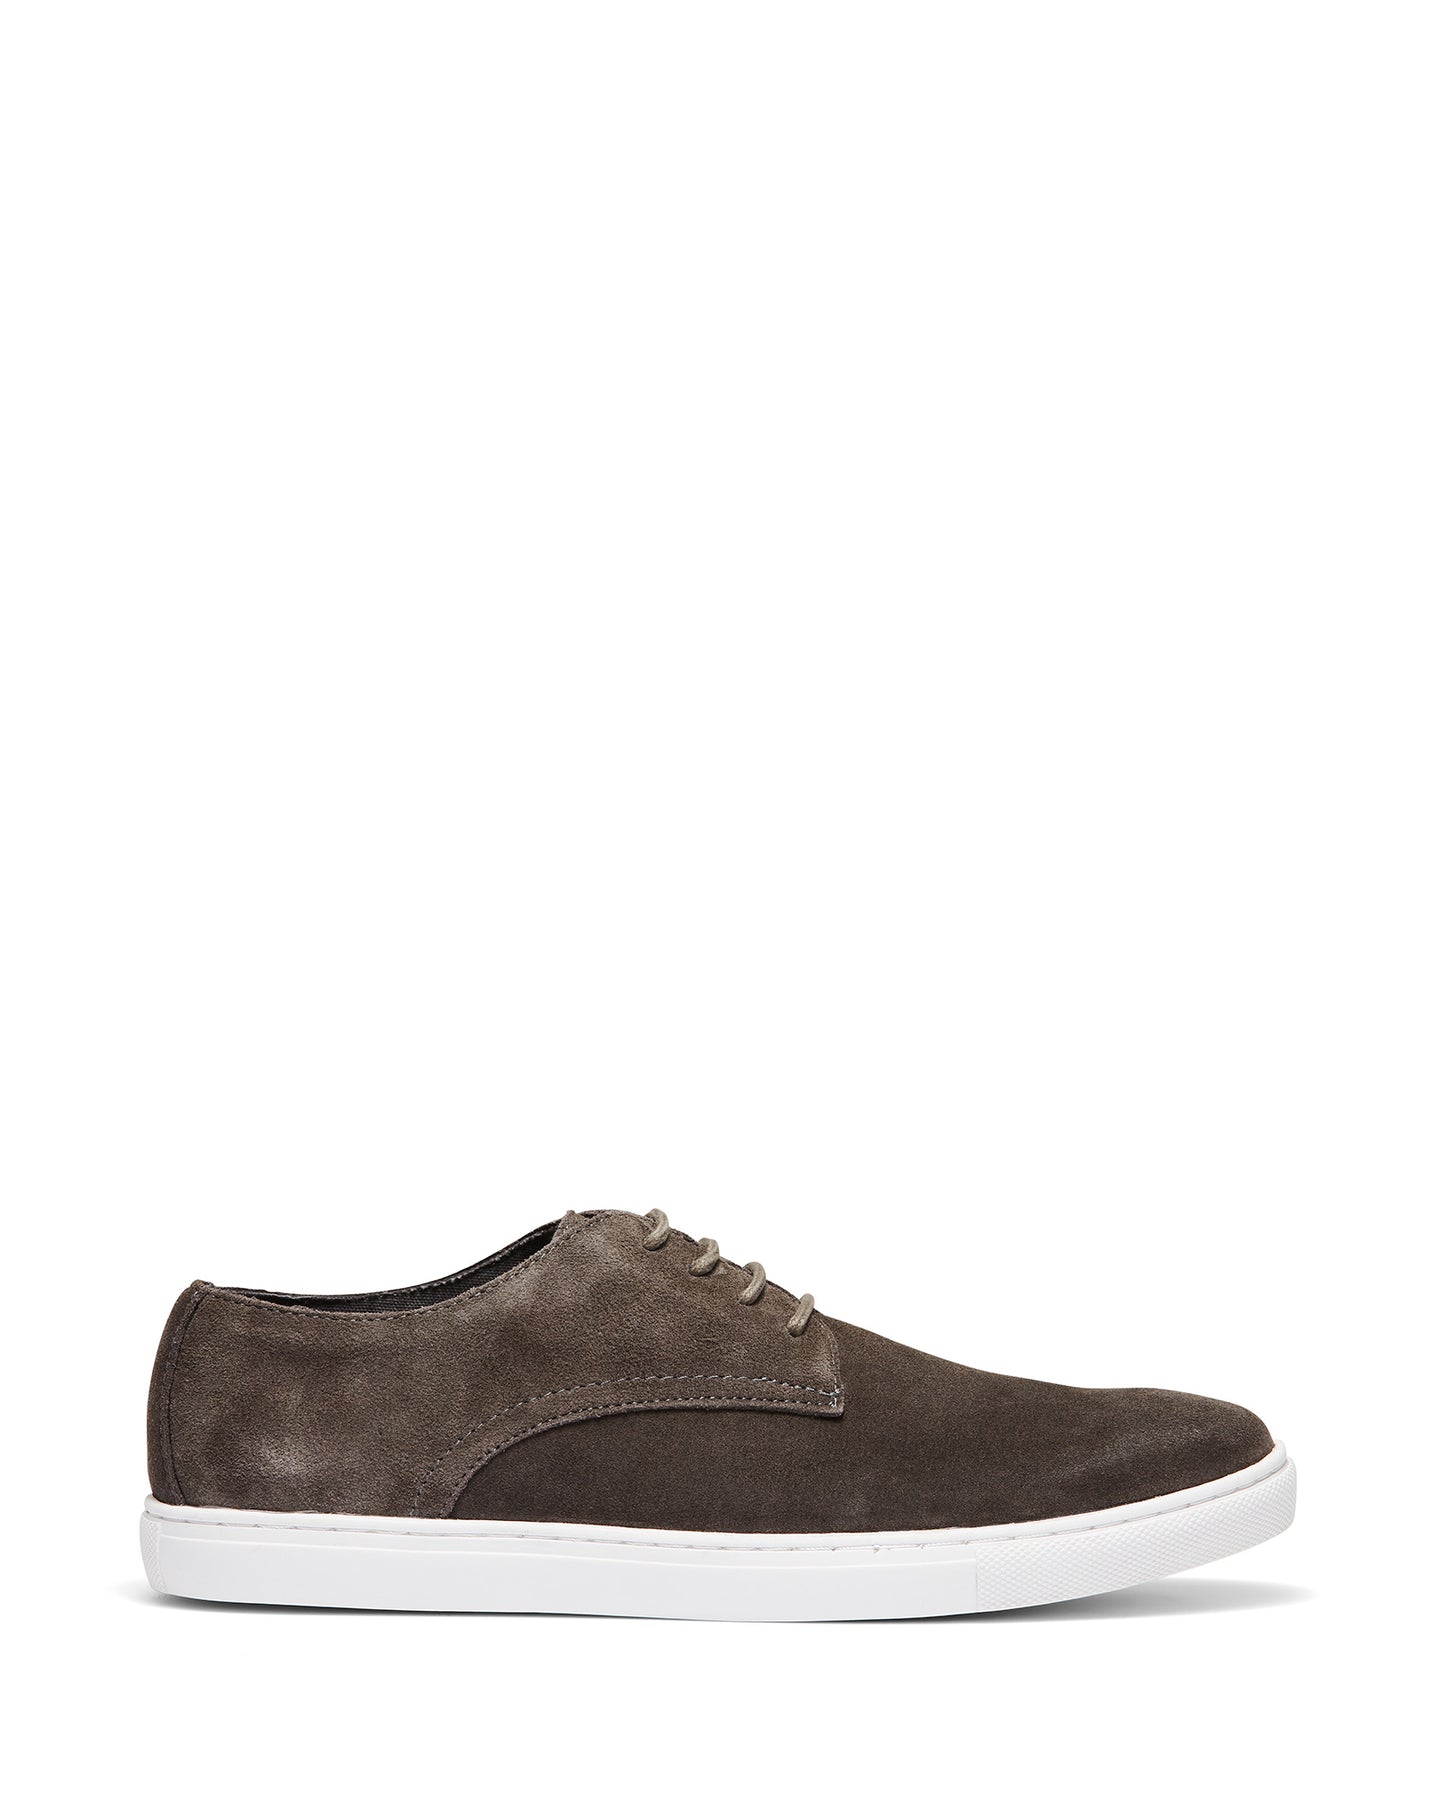 Uncut Shoes Riptide Grey | Men's Sneaker | Low Top | Lace Up | Leather